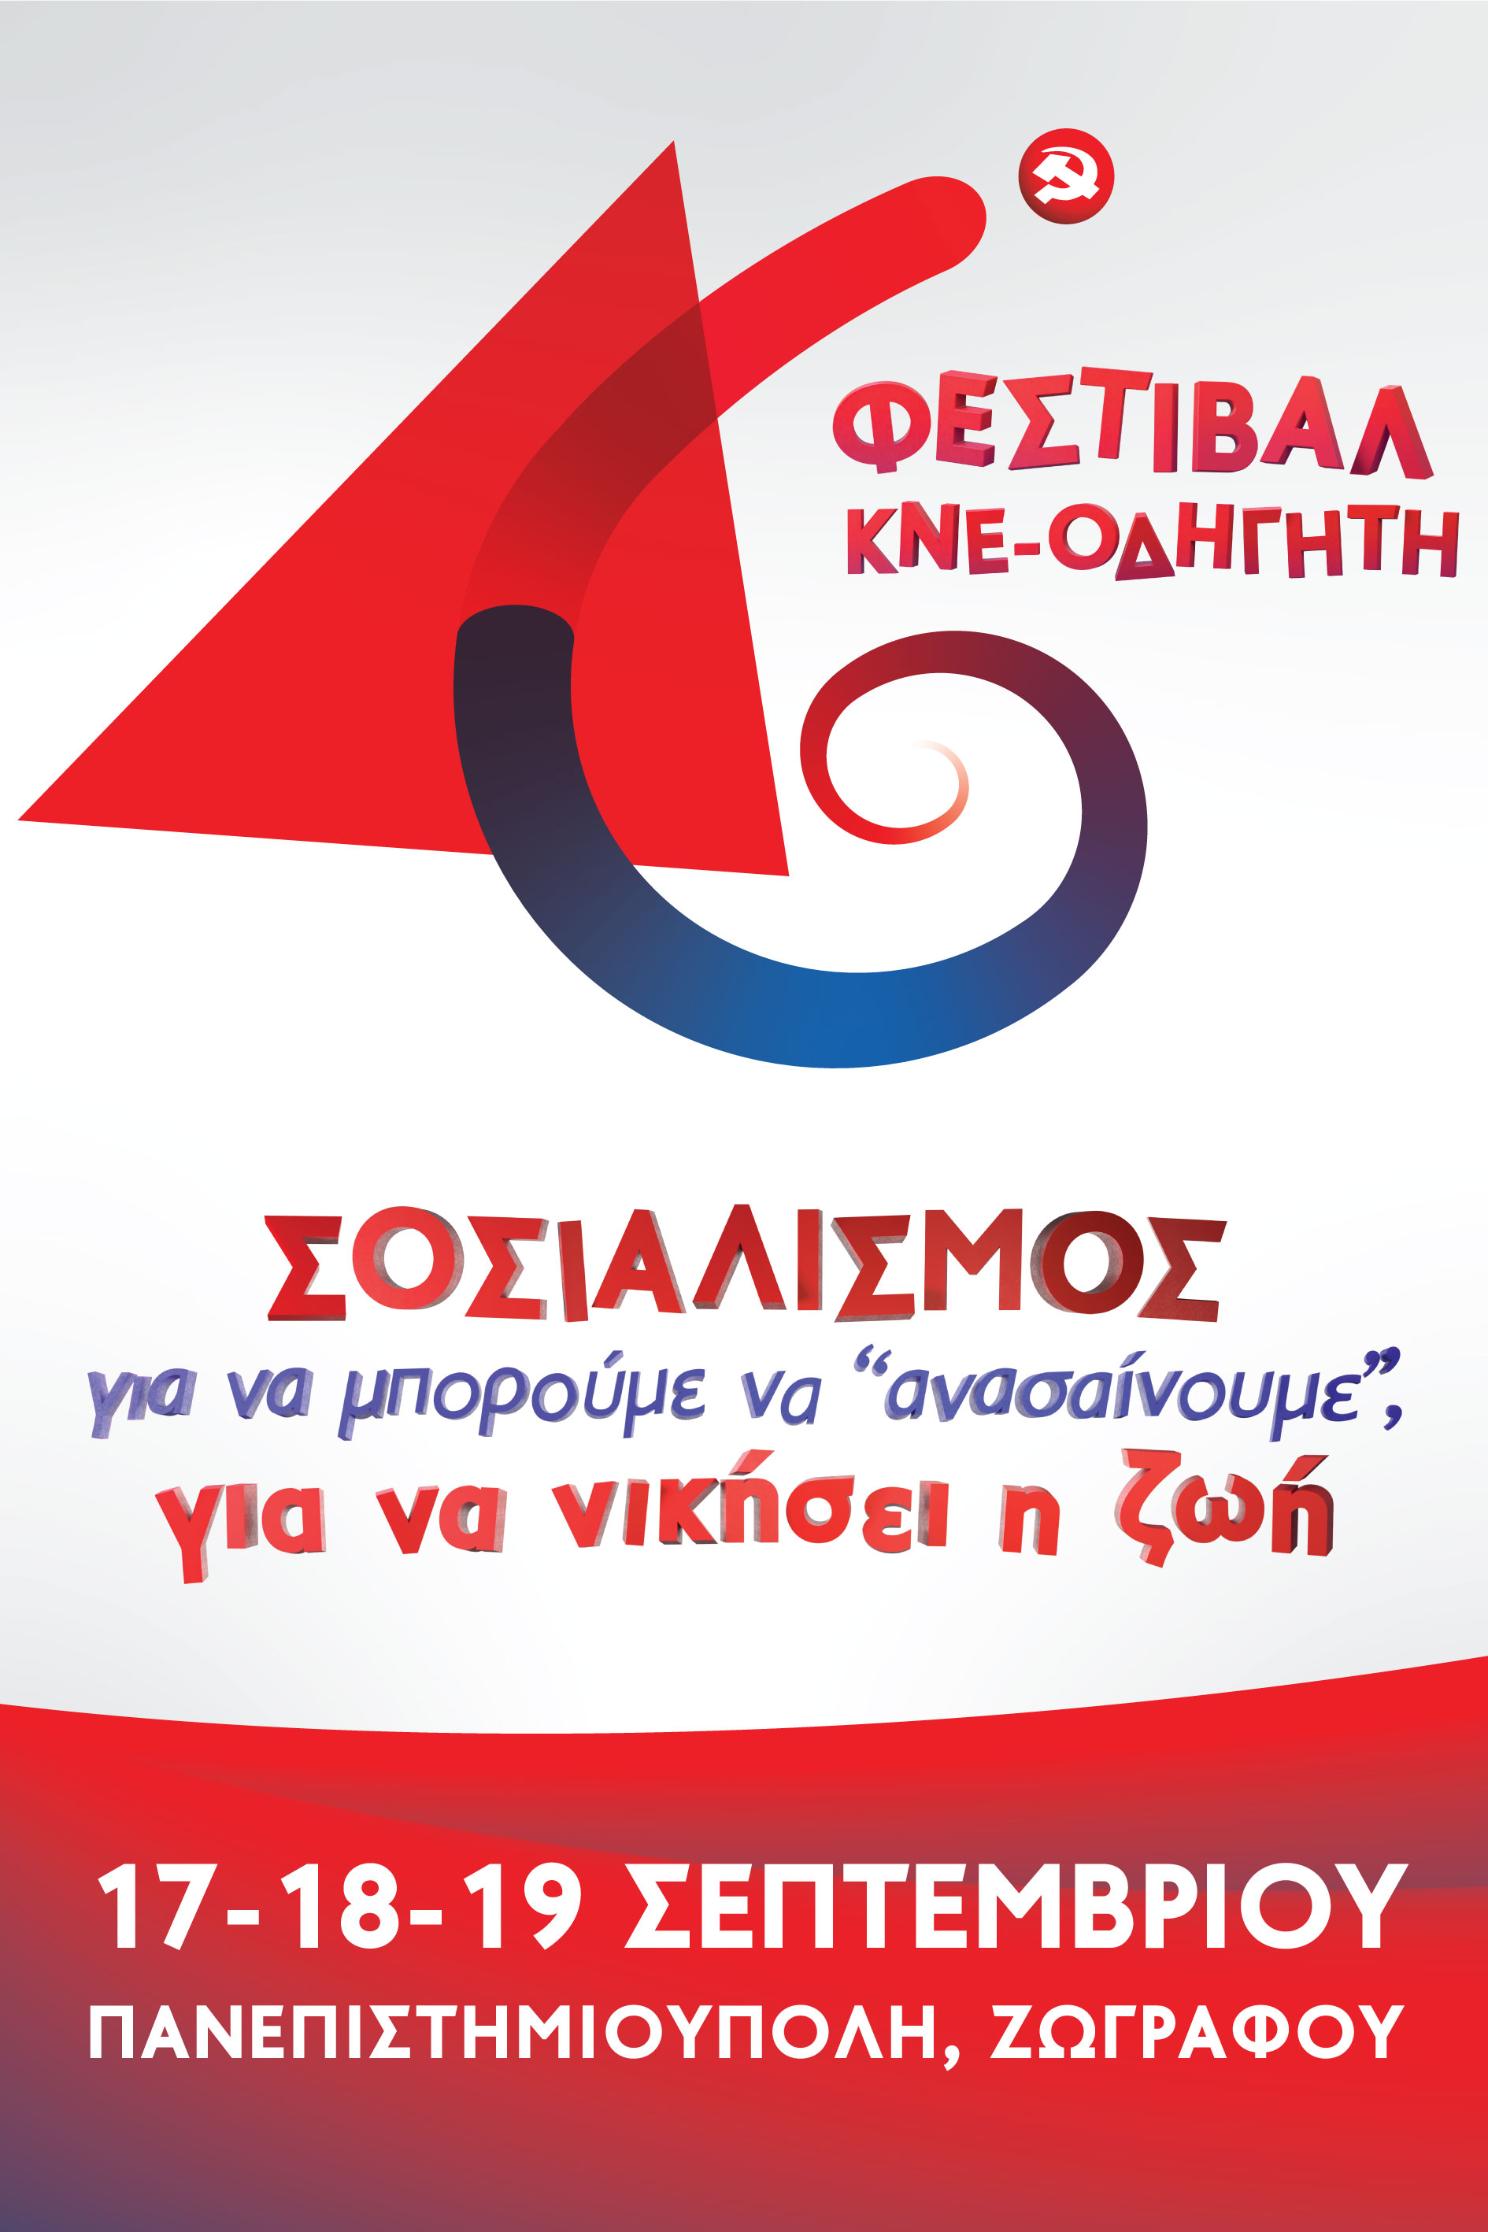 Αφίσα 46ου Φεστιβάλ ΚΝΕ-ΟΔΗΓΗΤΗ